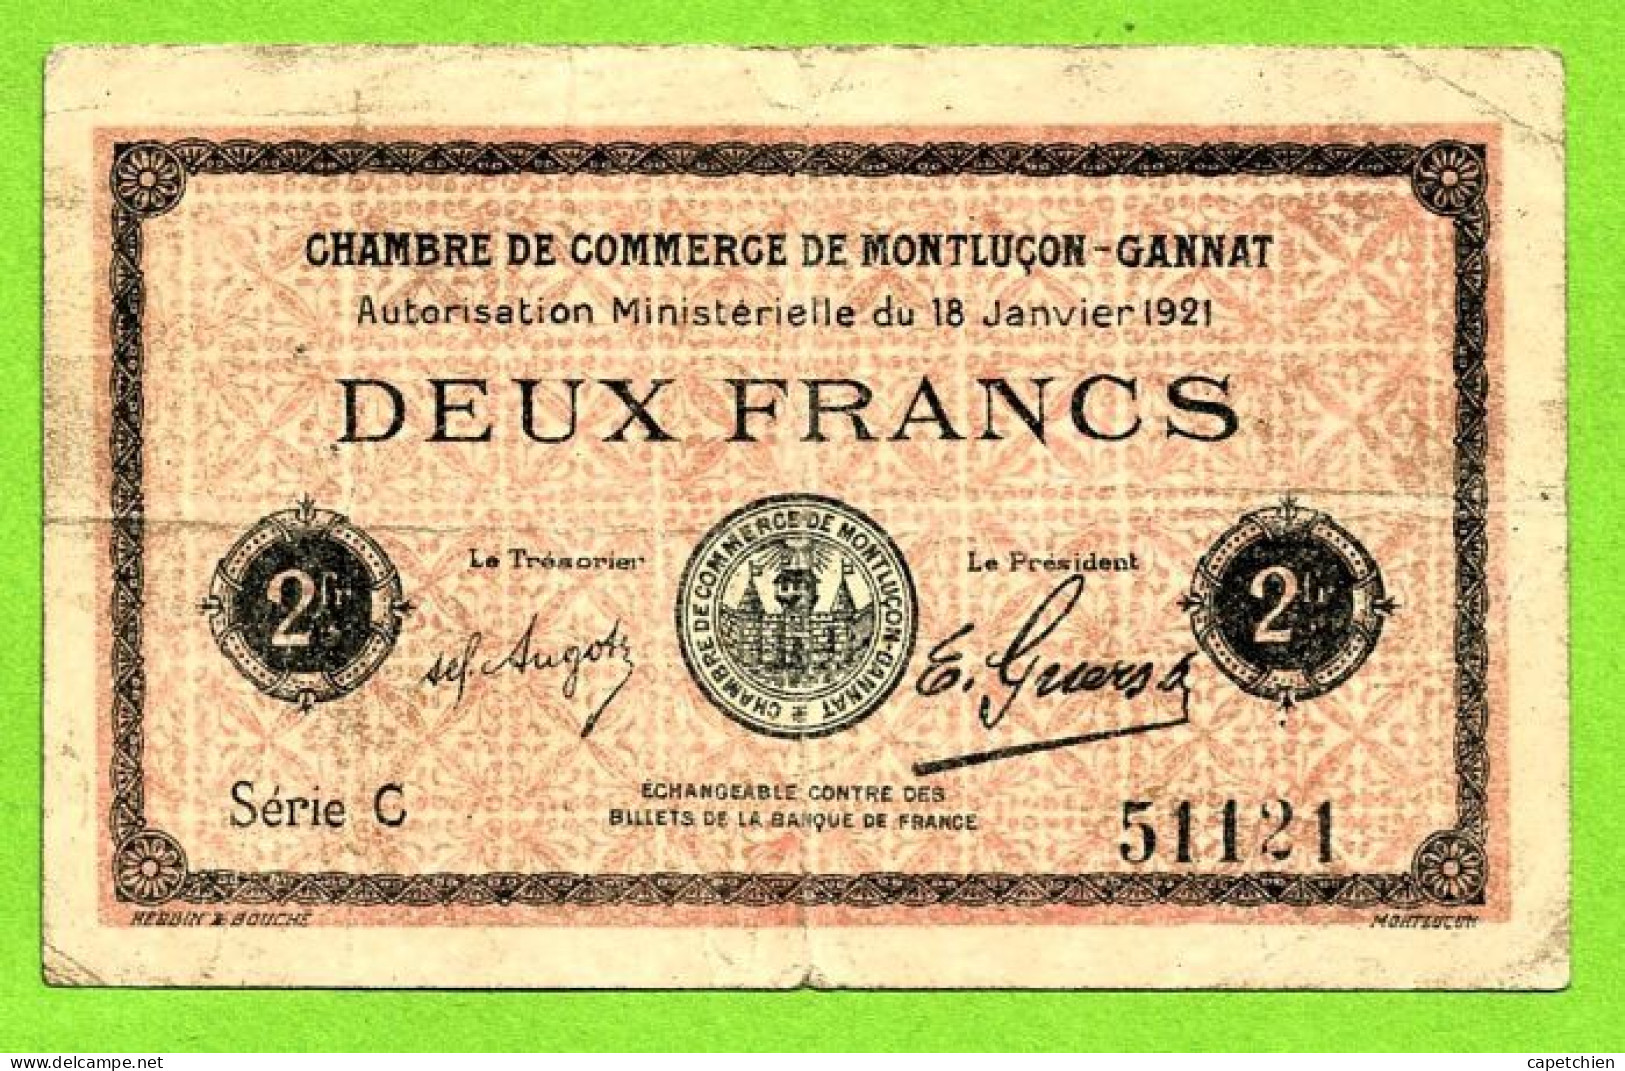 FRANCE / CHAMBRE De COMMERCE De MONTLUÇON - GANNAT / 2 FRANCS / 18 JANVIER 1921  N° 51121 / SERIE C - Chambre De Commerce